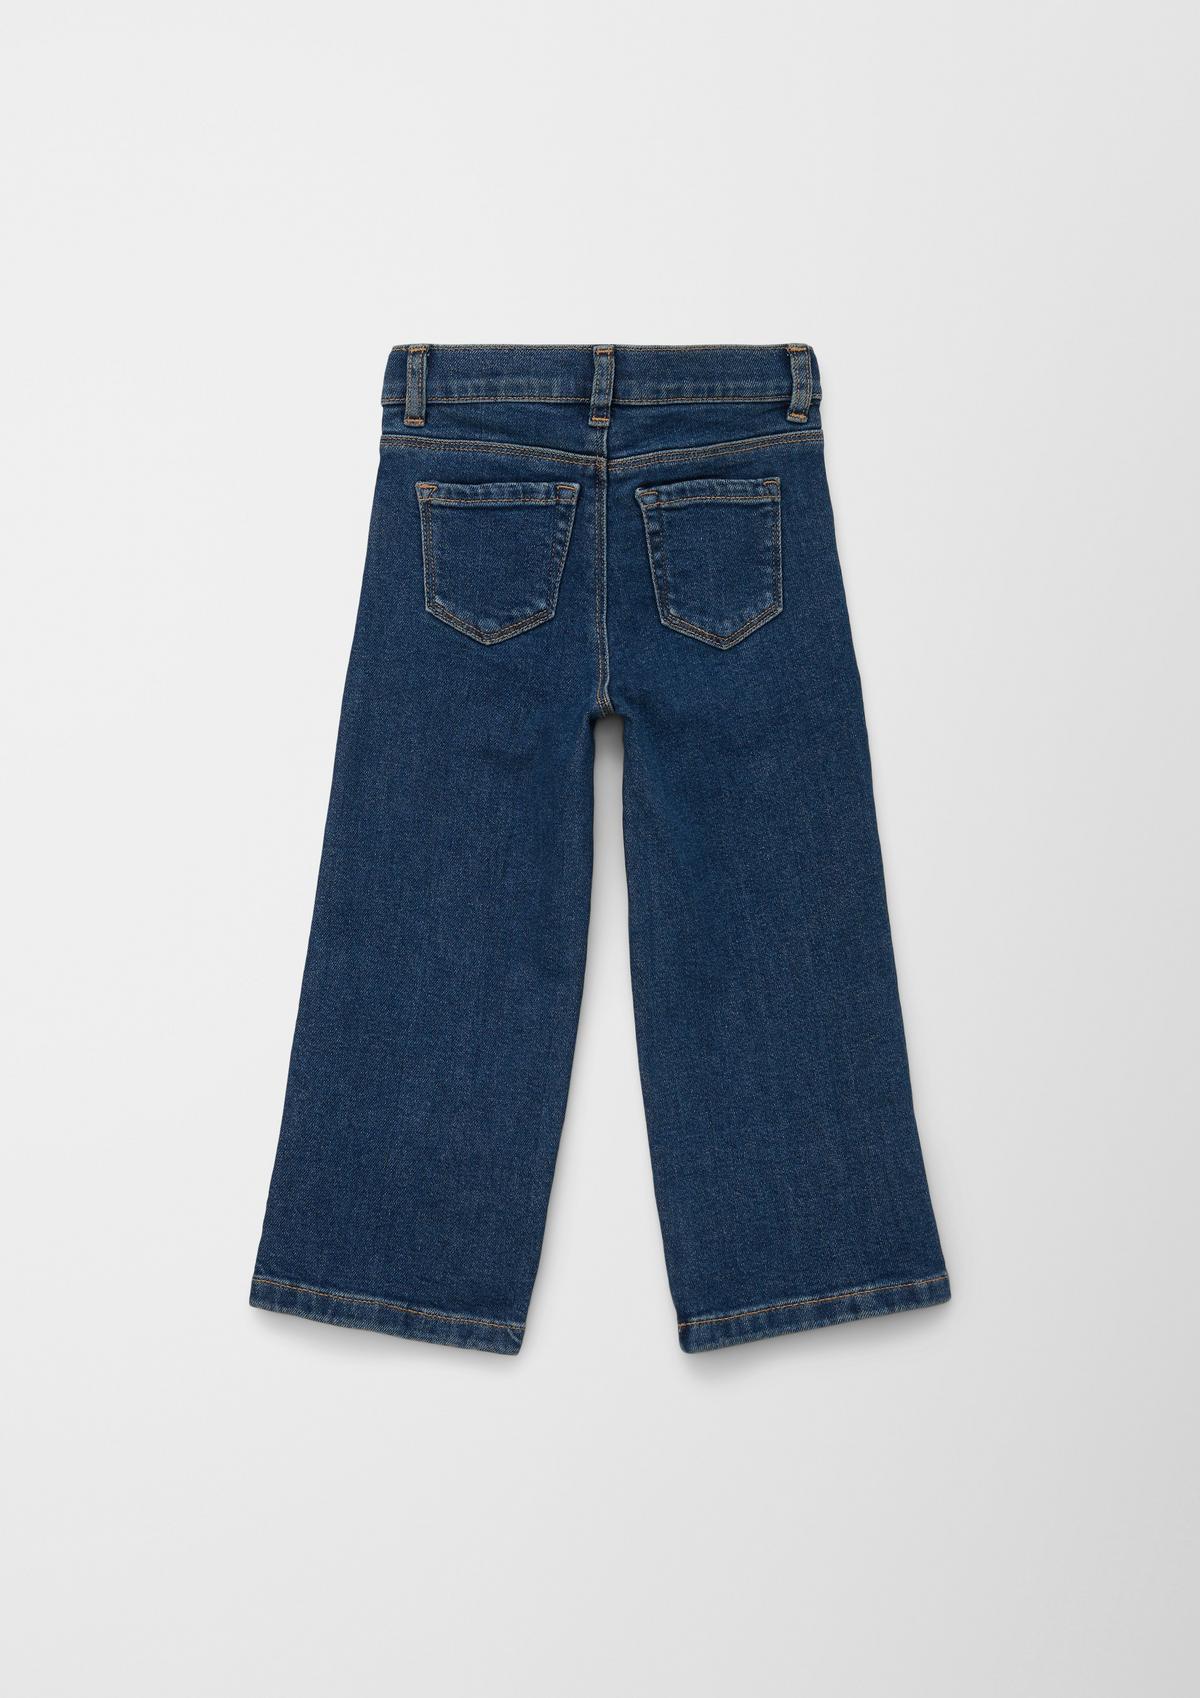 s.Oliver Jeans / regular fit / mid rise / wide leg / width-adjustable